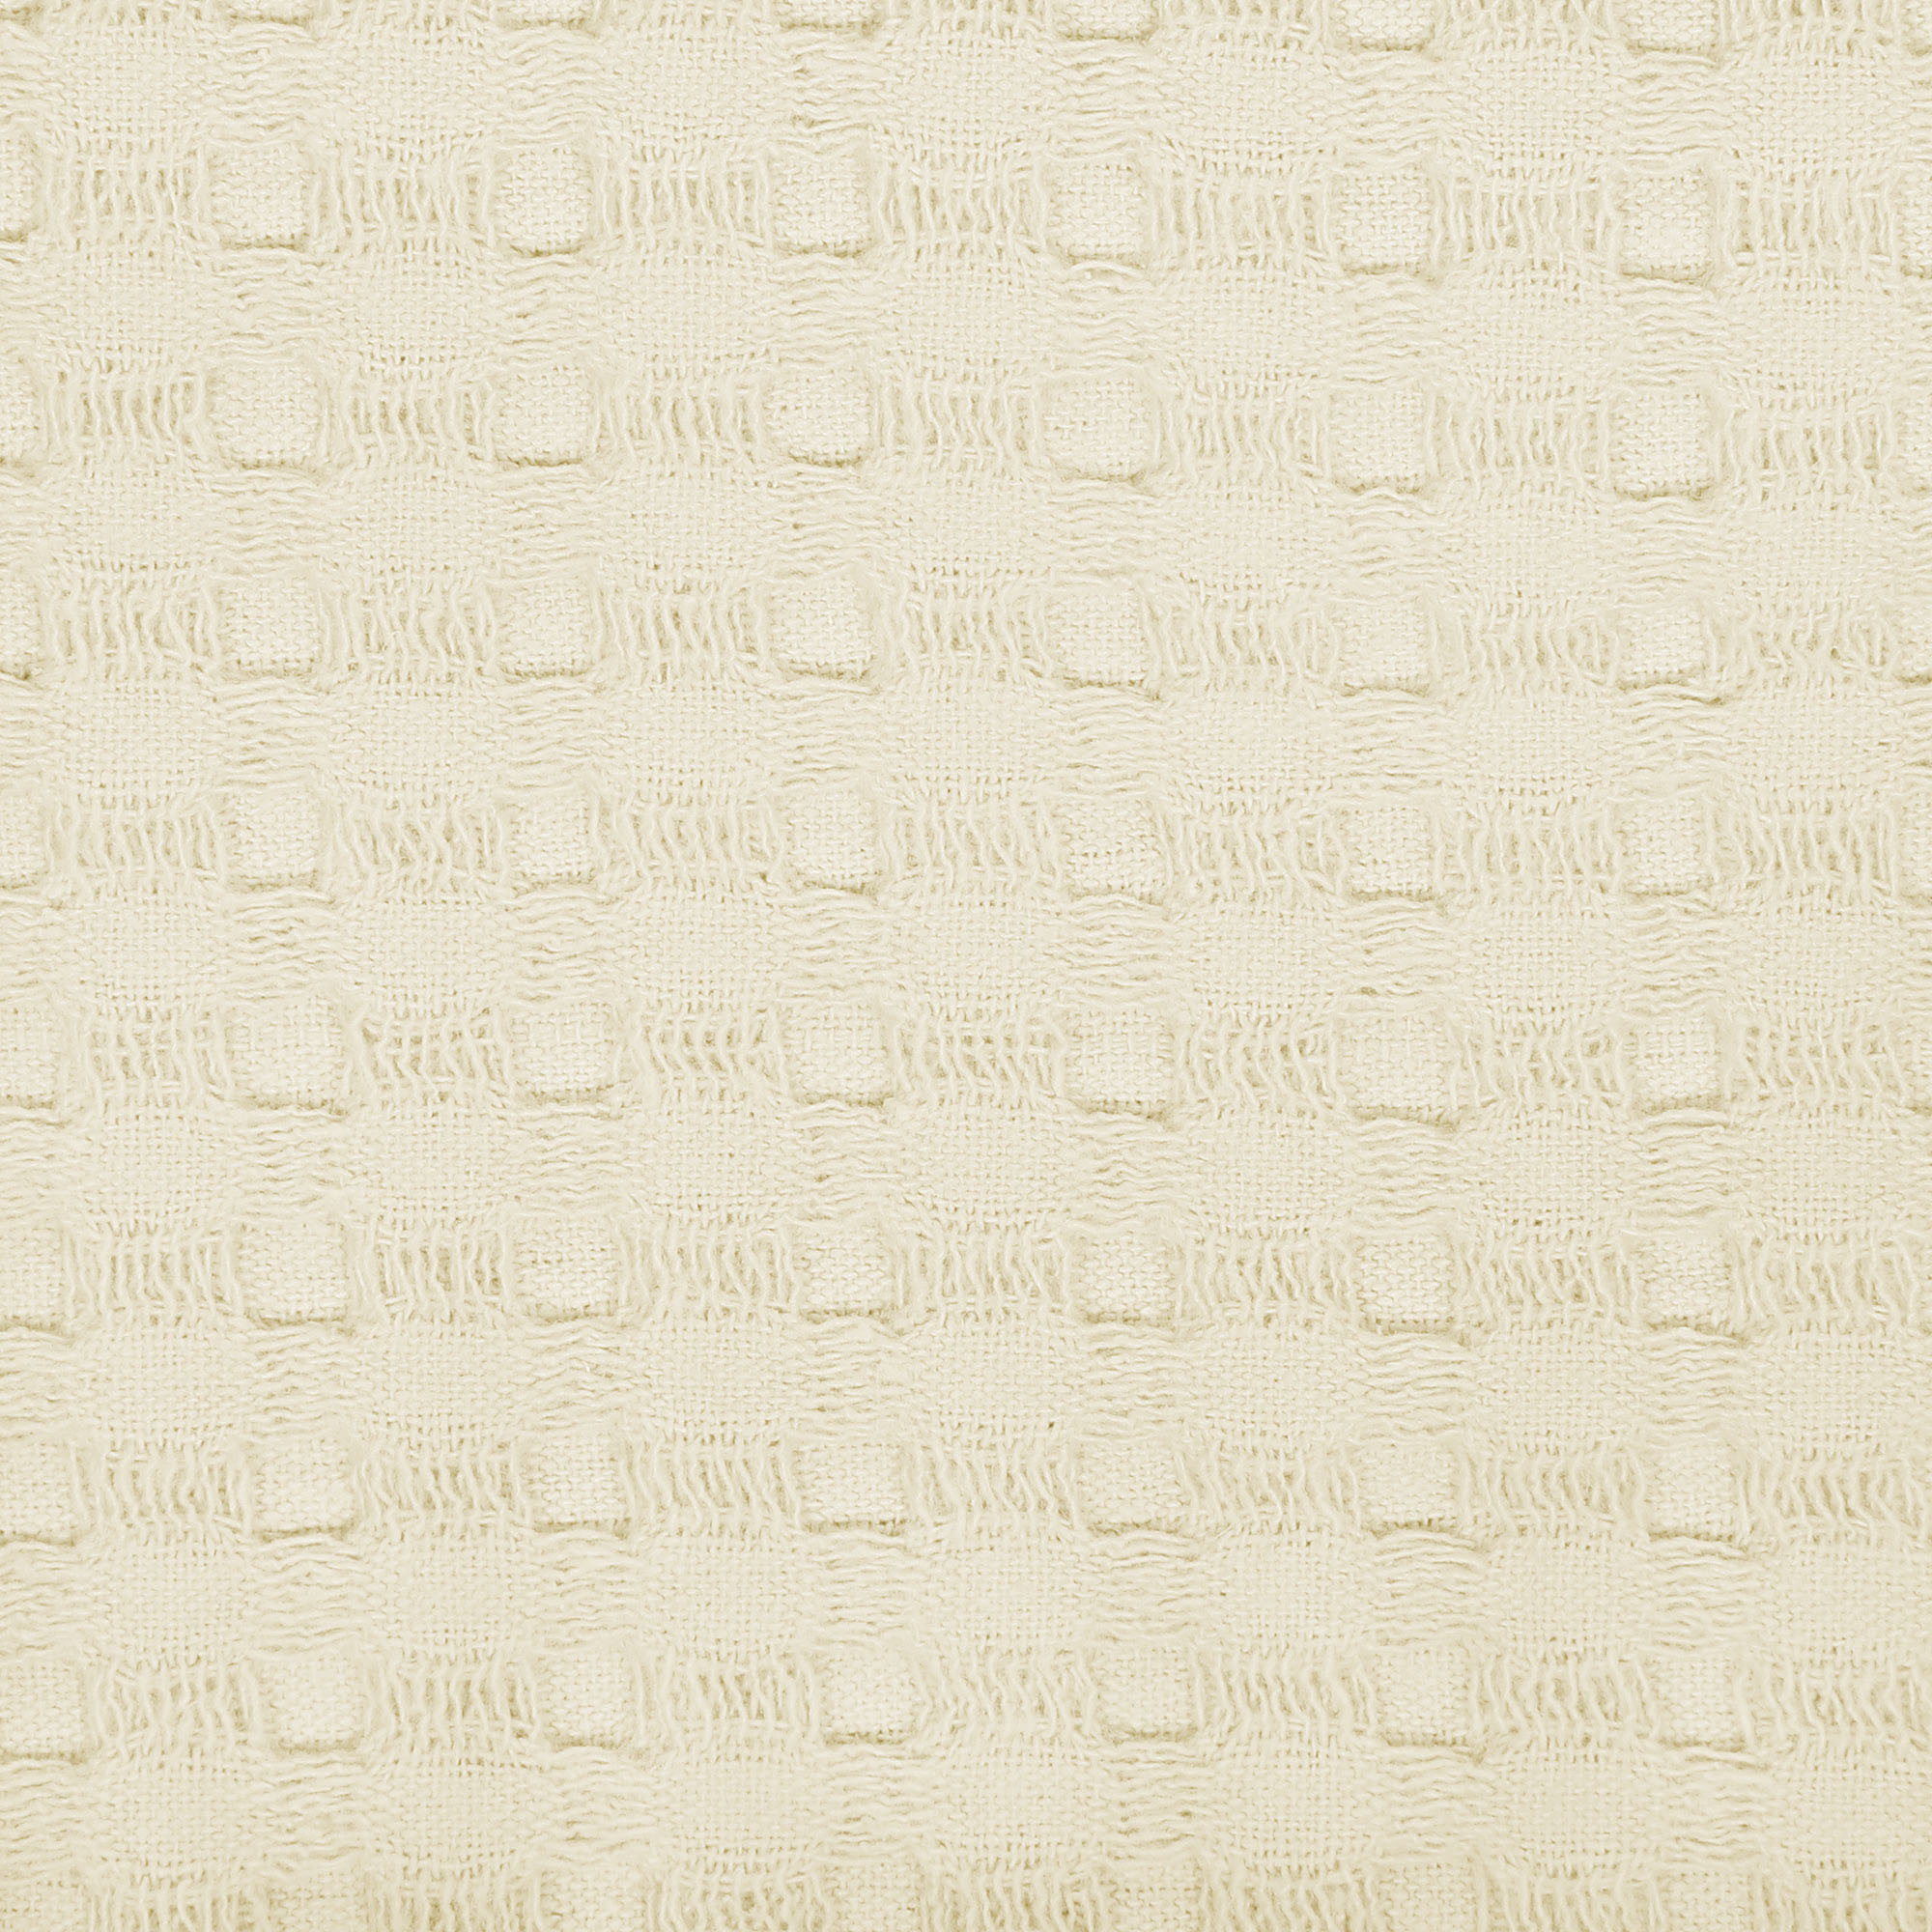 Килт мужской вафельный Asil sauna beige 55х160 см, цвет бежевый - фото 8